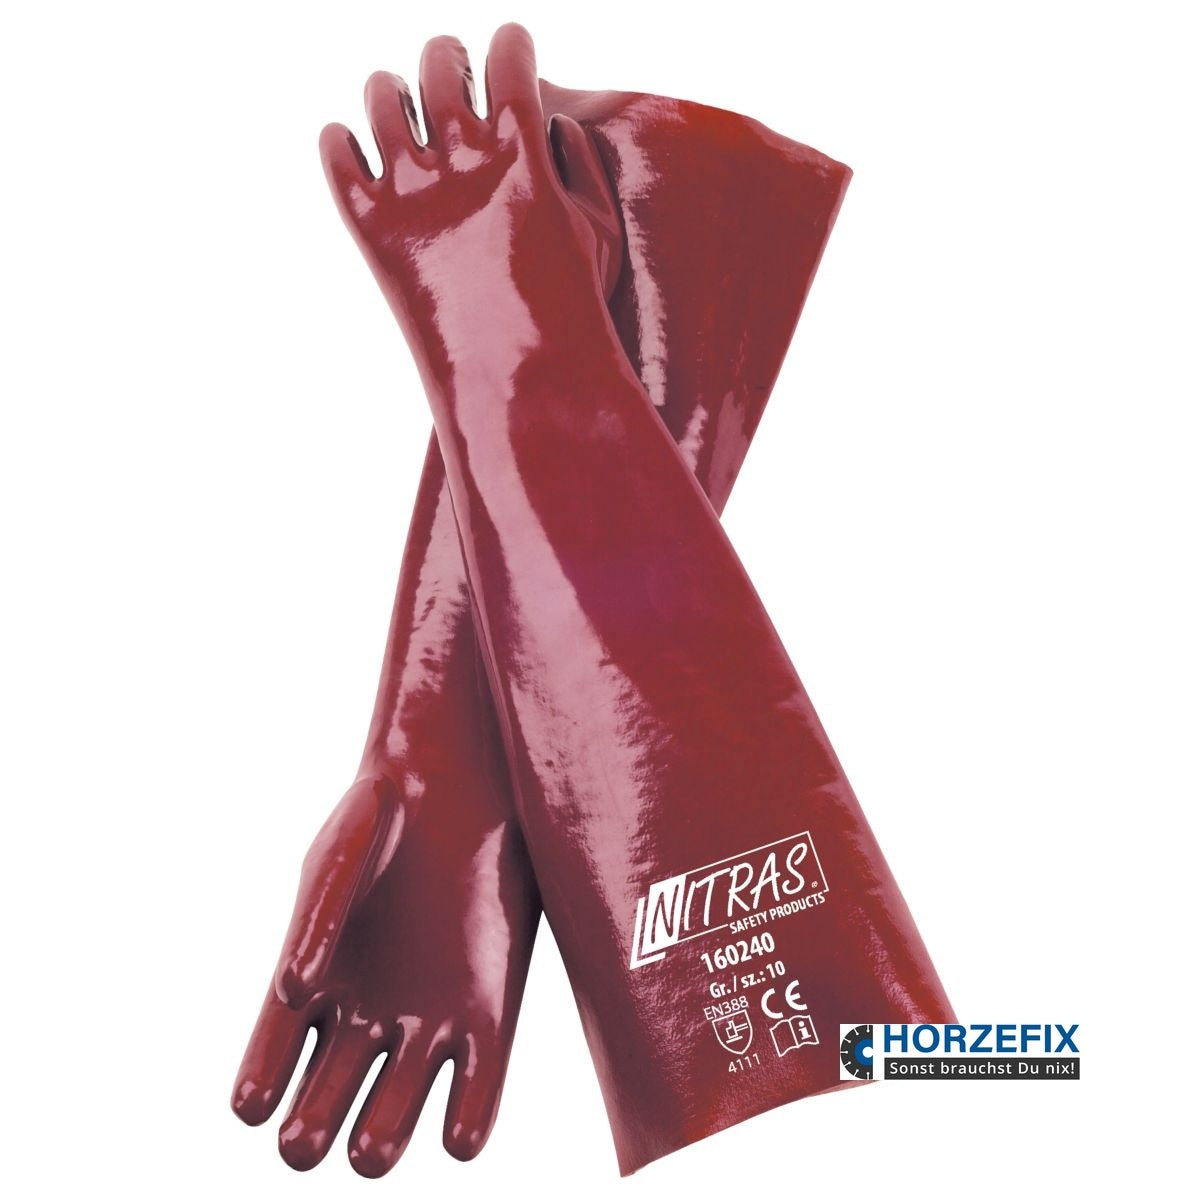 160240 Nitras PVC Handschuhe Chemikalien vollbeschichtet 40 cm lang rot 12 Paar Gr 10 horzefix